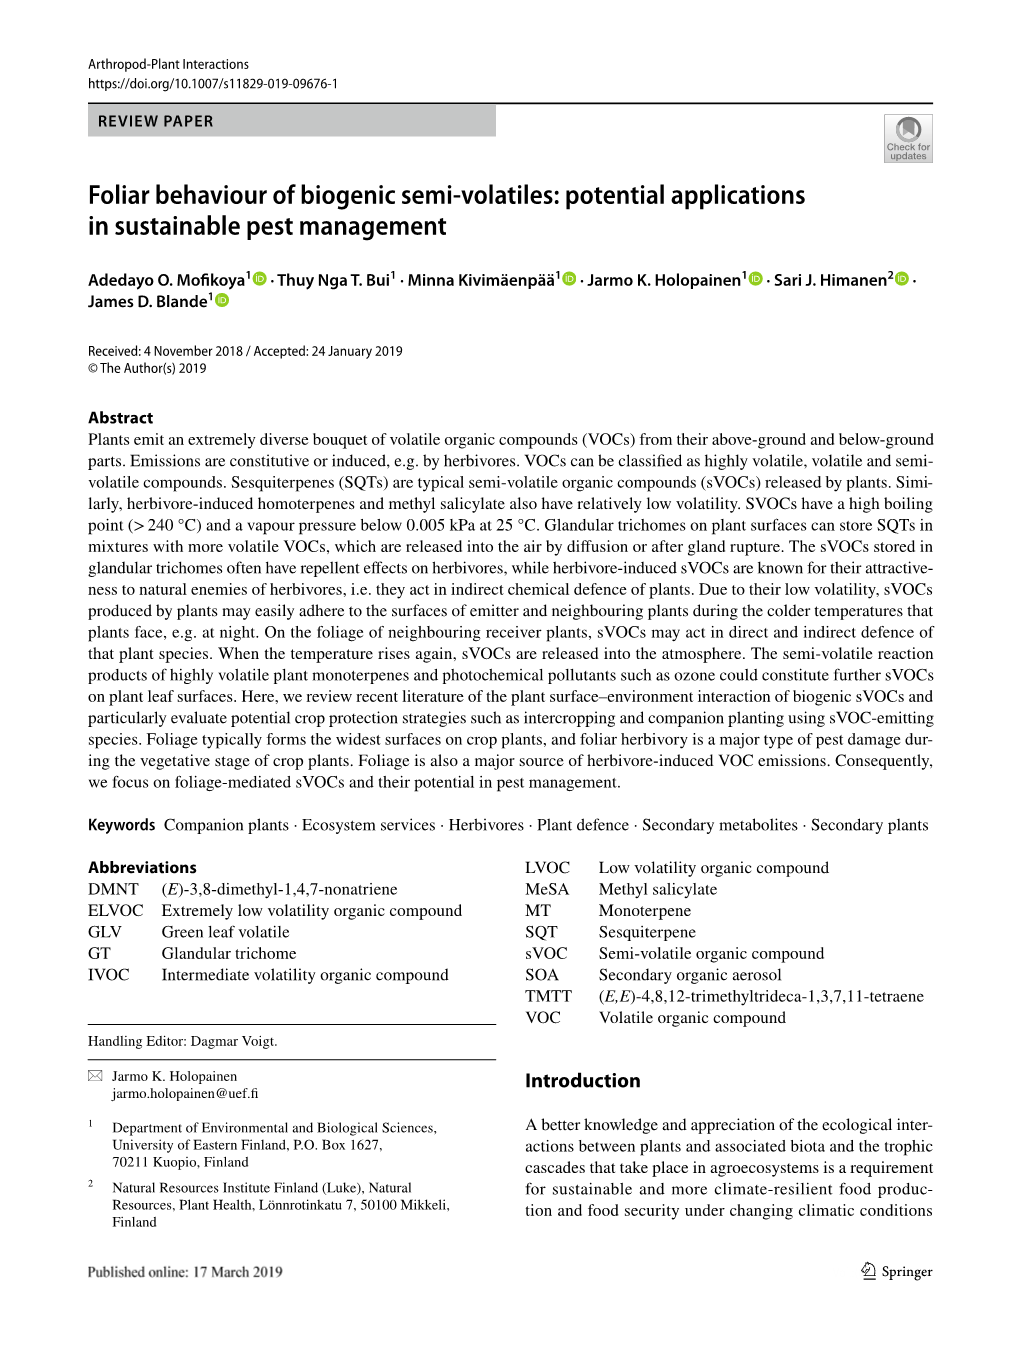 Foliar Behaviour of Biogenic Semi-Volatiles: Potential Applications in Sustainable Pest Management